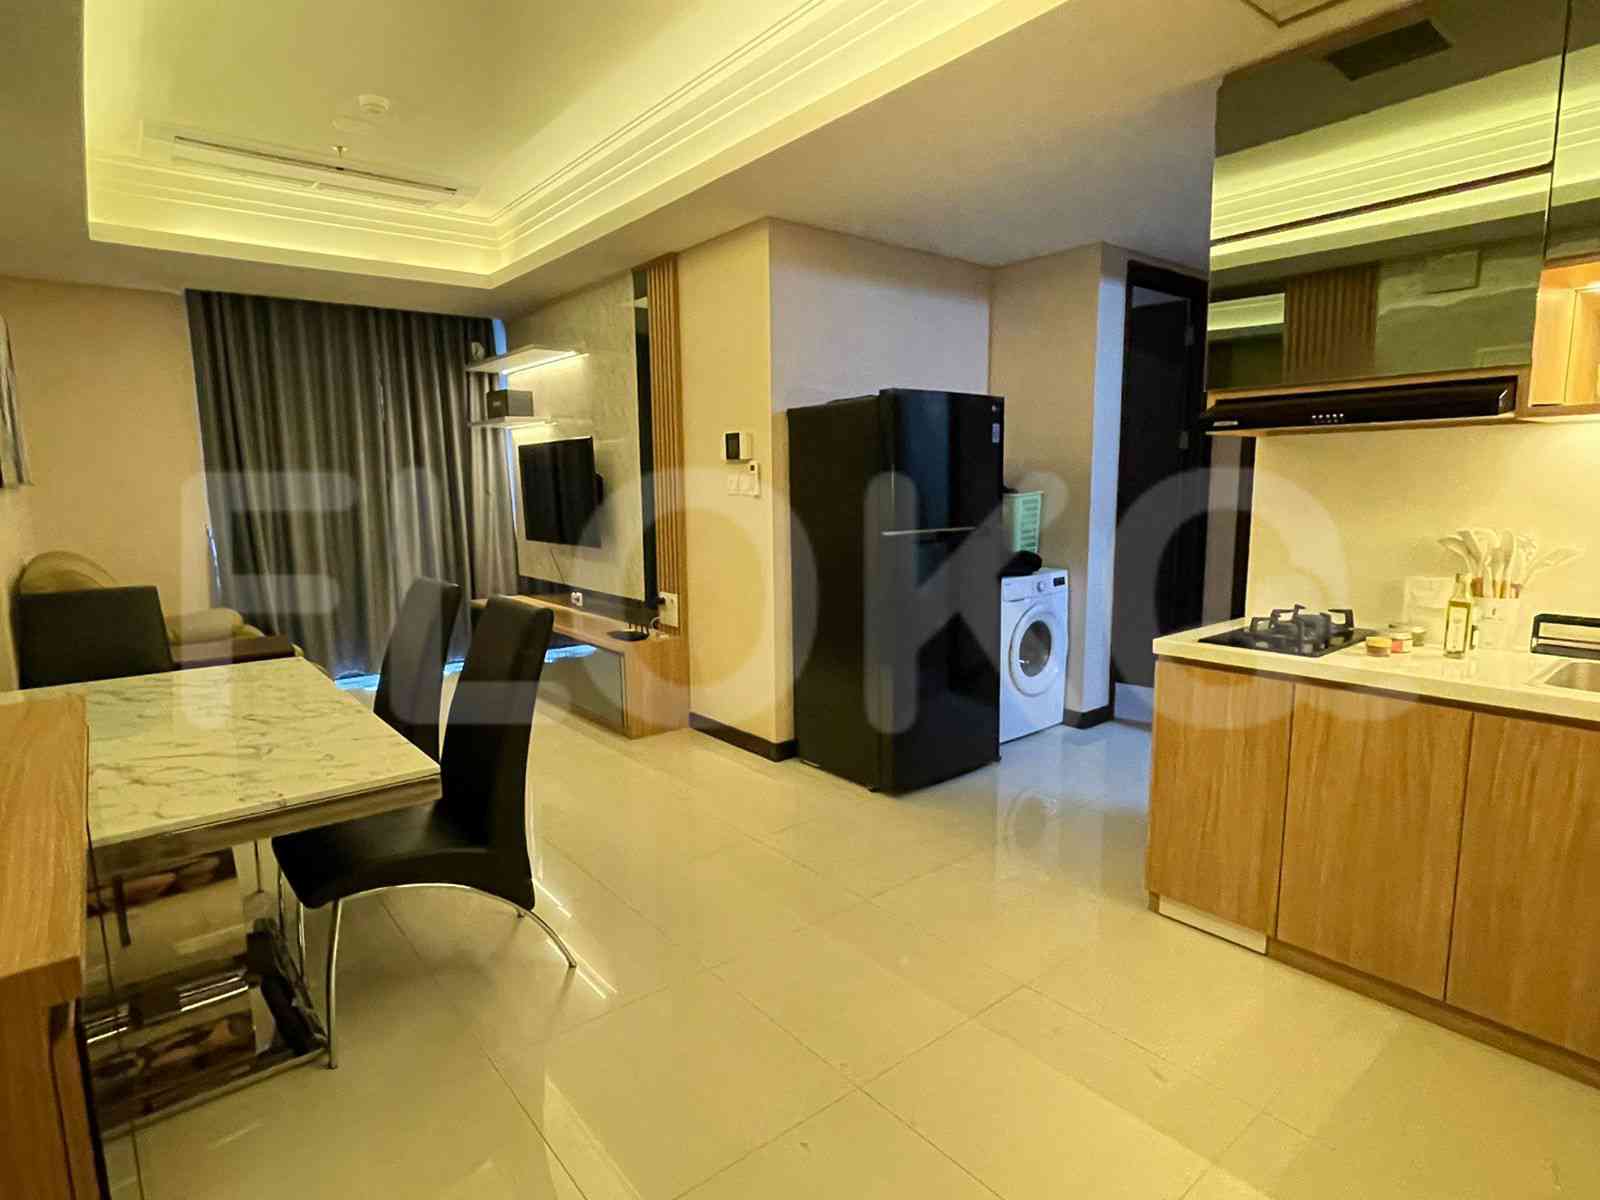 3 Bedroom on 12th Floor for Rent in Casa Grande - fte871 5